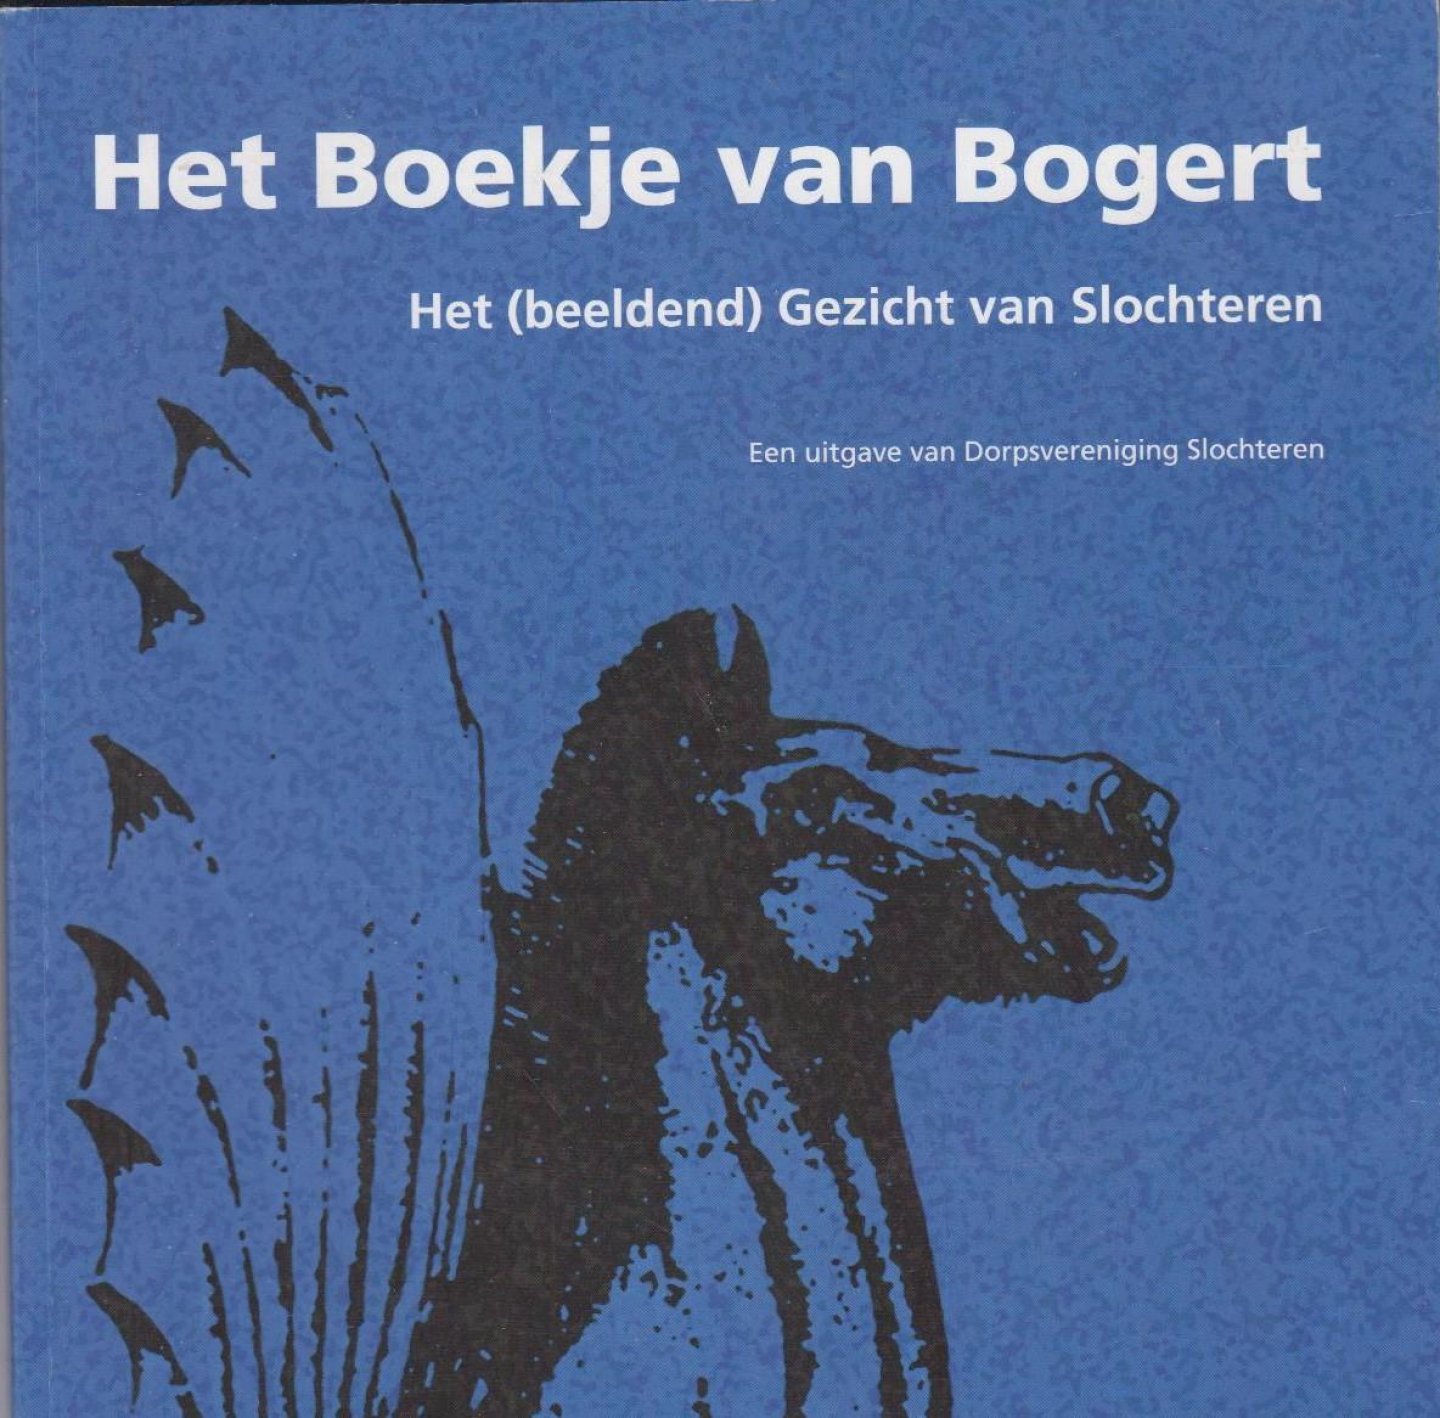 Arnold van Calker, Sietse Boiten, Herman Sandman - Het boekje van Bogert: het (beeldend) gezicht van Slochteren